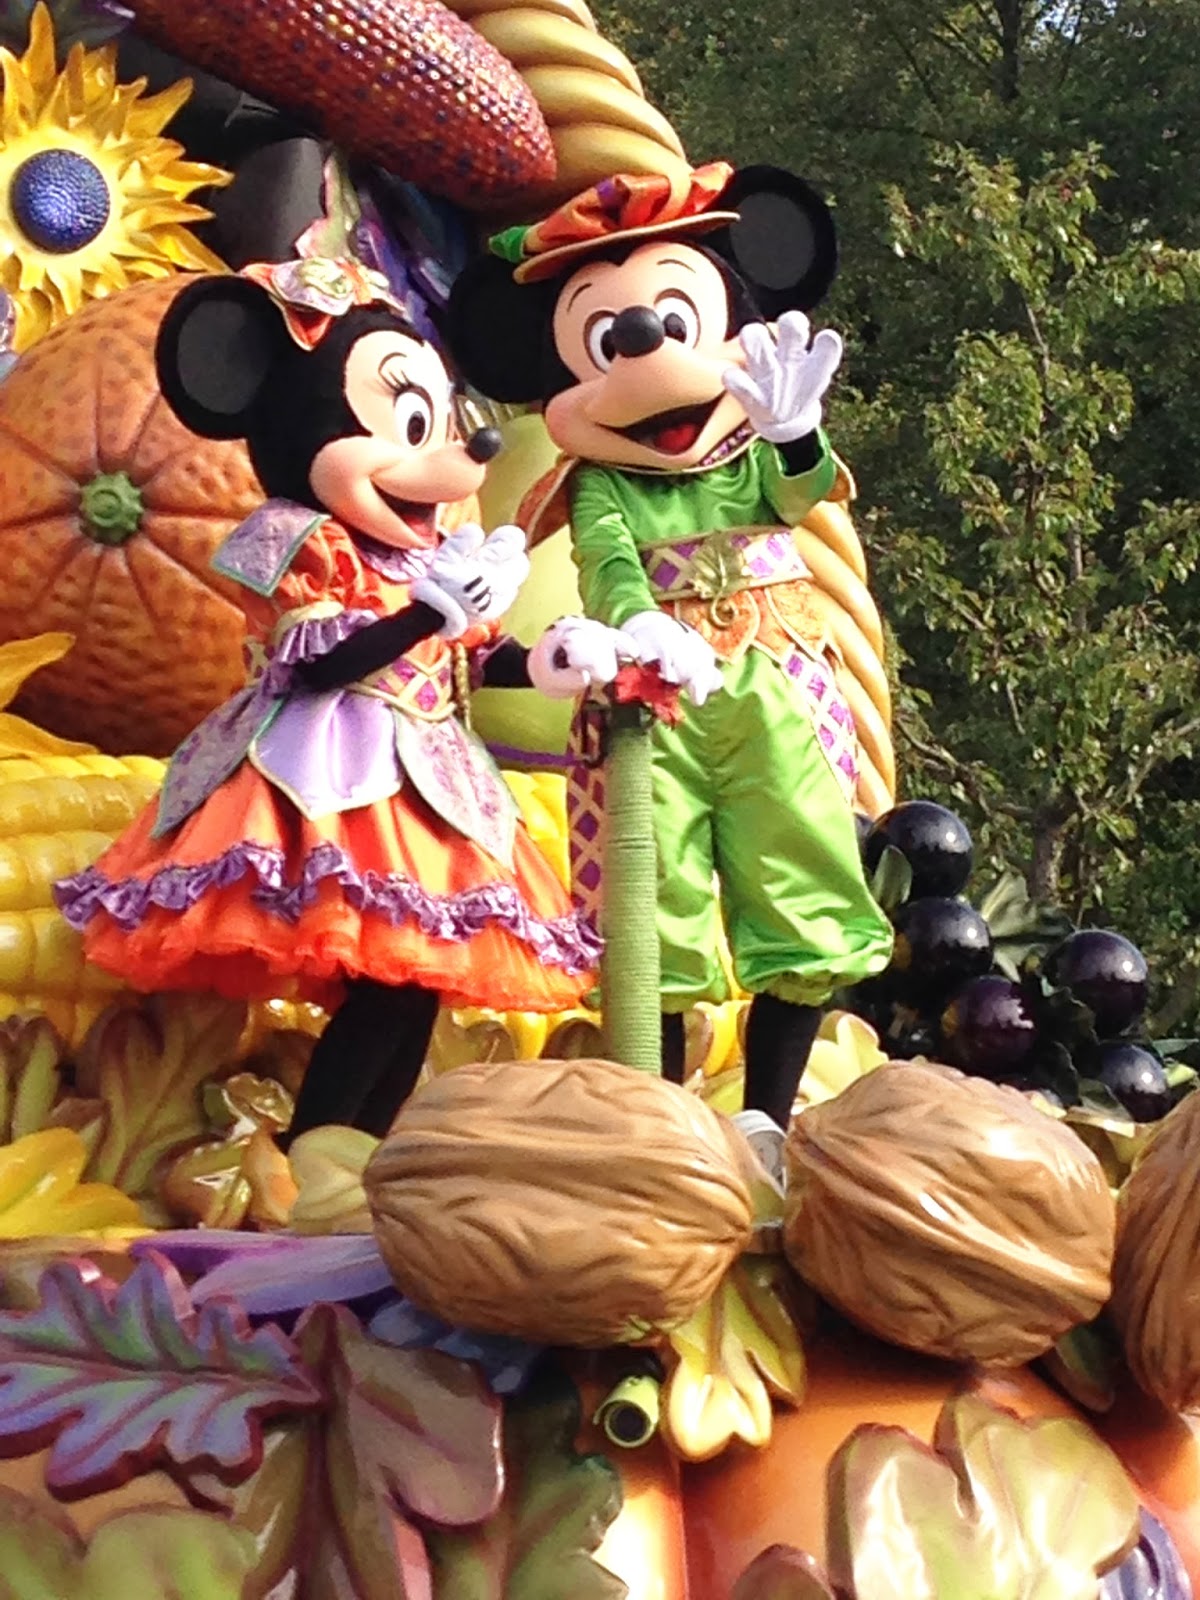 Banc d'essai : jouet Minnie Disney — Je suis une maman